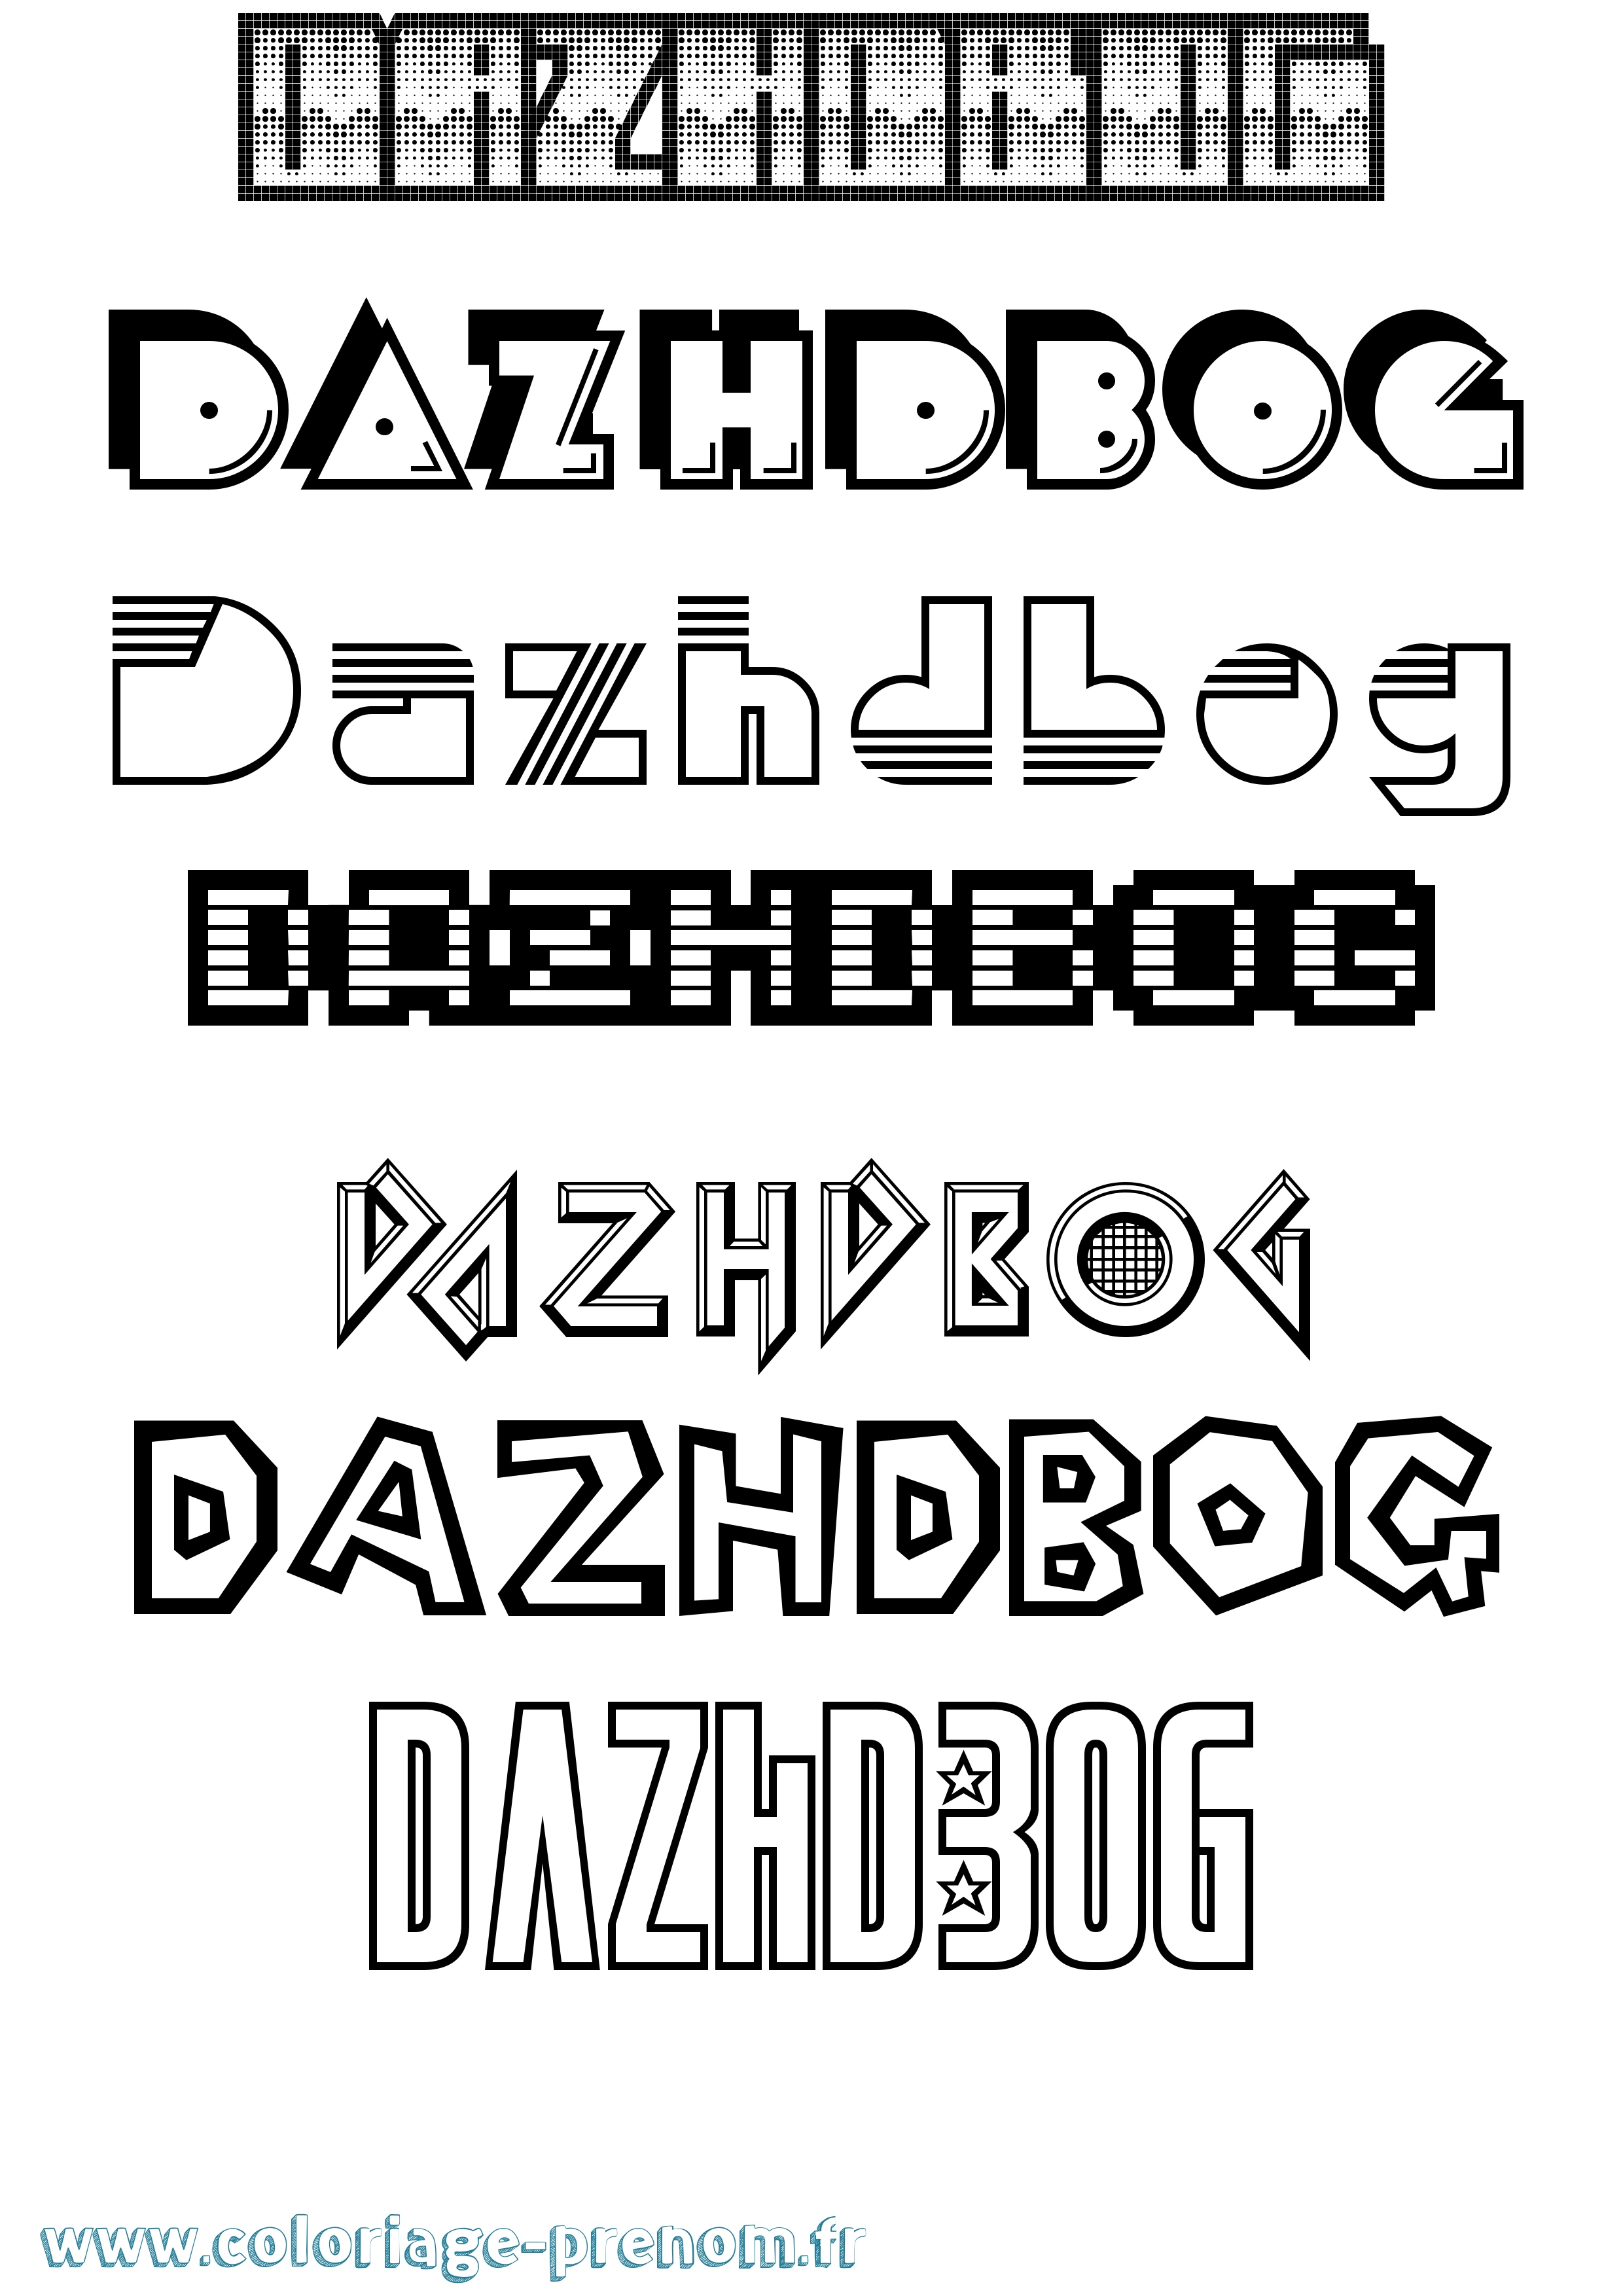 Coloriage prénom Dazhdbog Jeux Vidéos